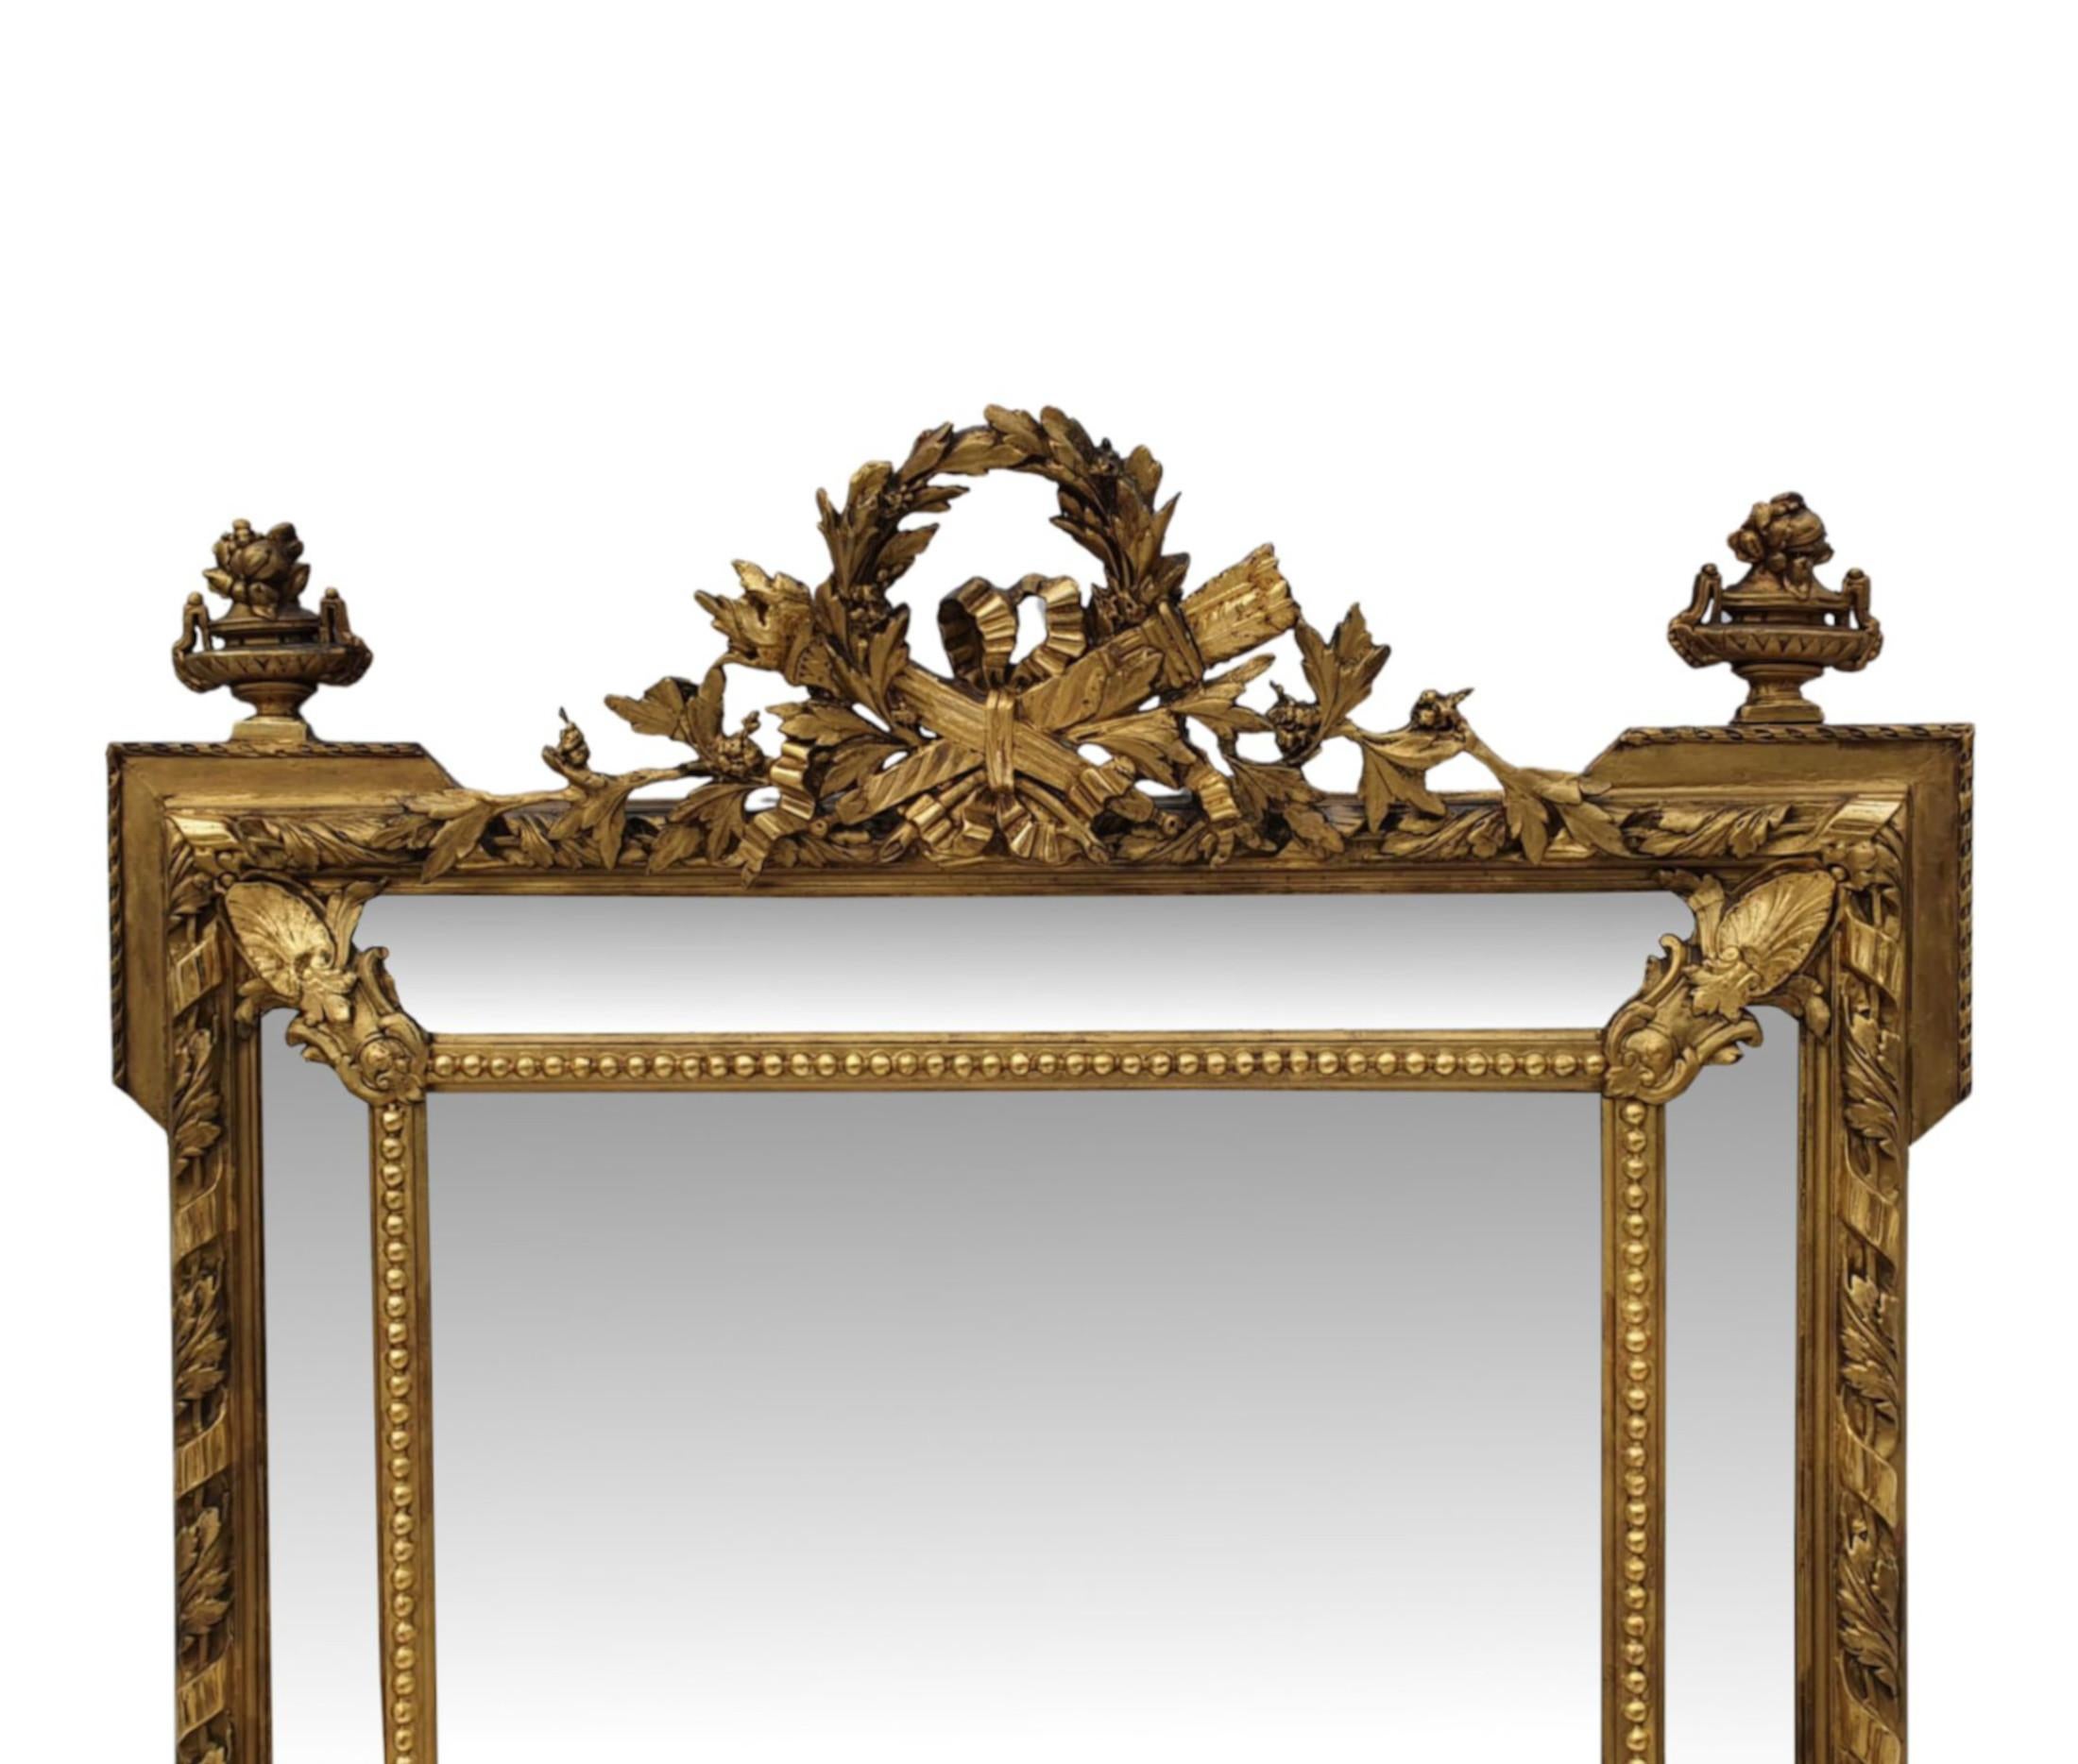 Eine sehr schöne 19. Jahrhundert vergoldet Rand overmanatle oder Halle Spiegel von großen Proportionen. Die rechteckige Spiegelglasplatte befindet sich in einem fabelhaft handgeschnitzten, geformten und profilierten Rahmen aus Goldholz mit Perlen,